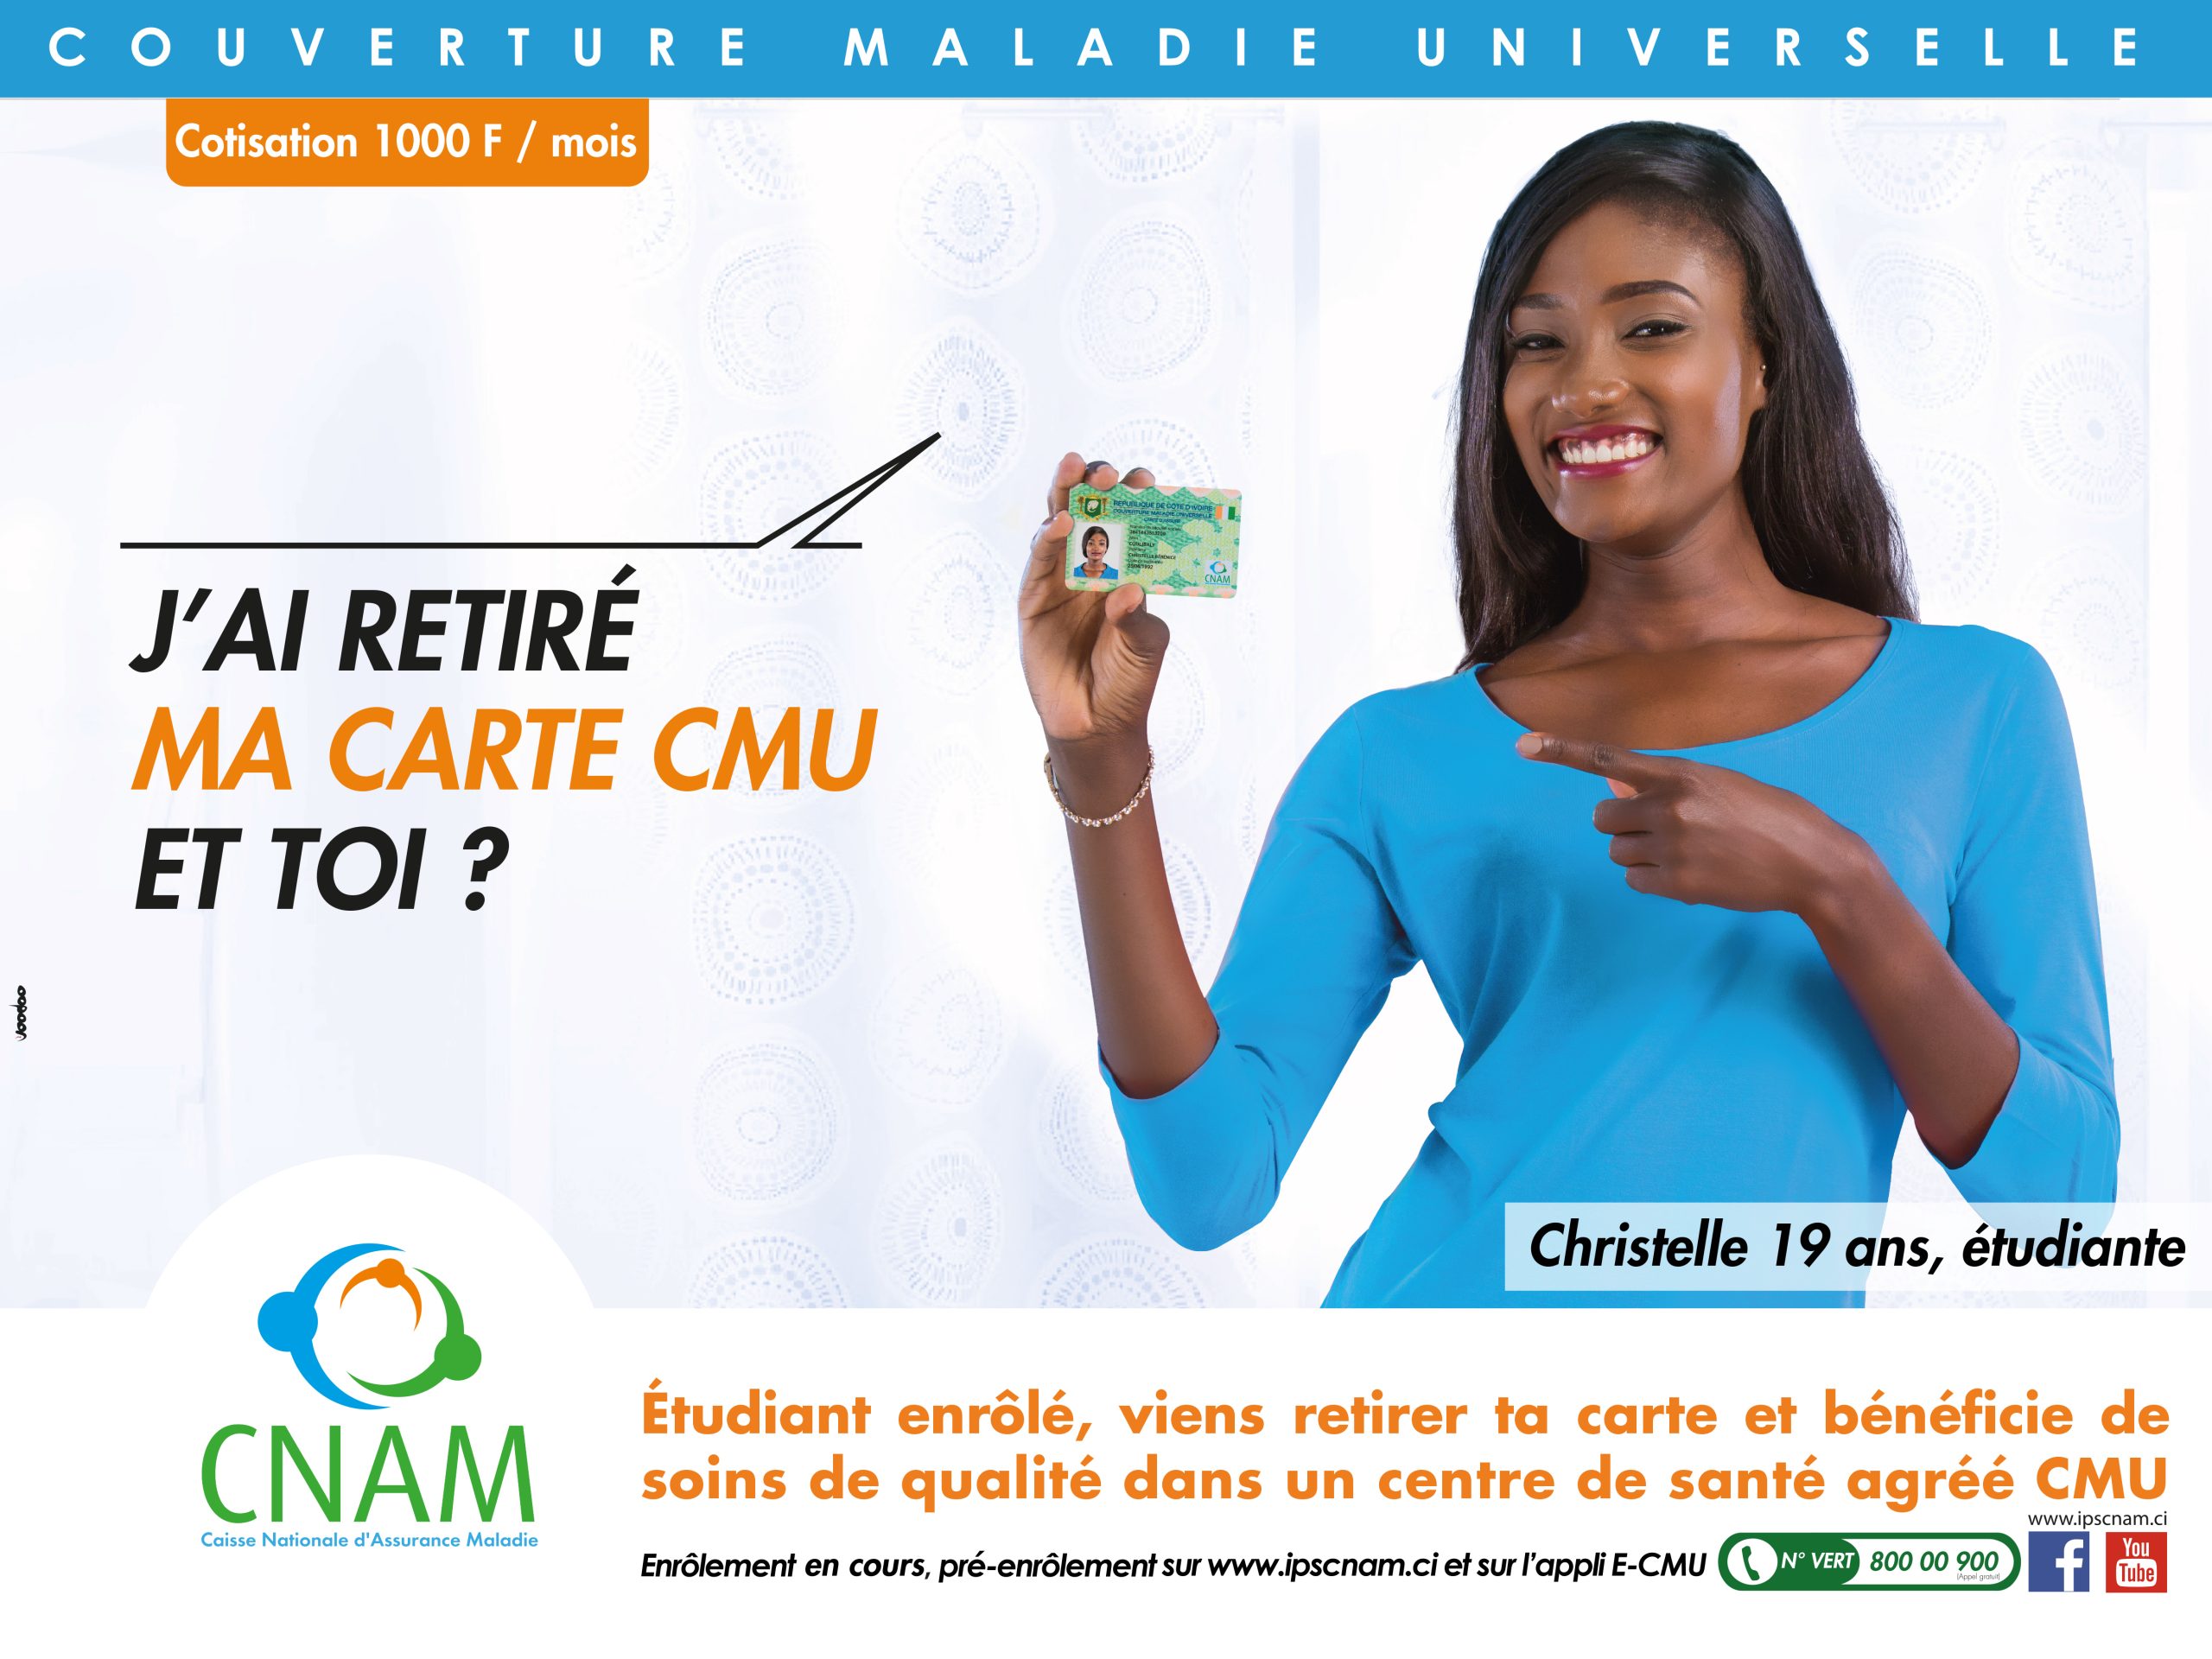 Prestations de la CNAM : voici le point de la situation en Côte d’Ivoire